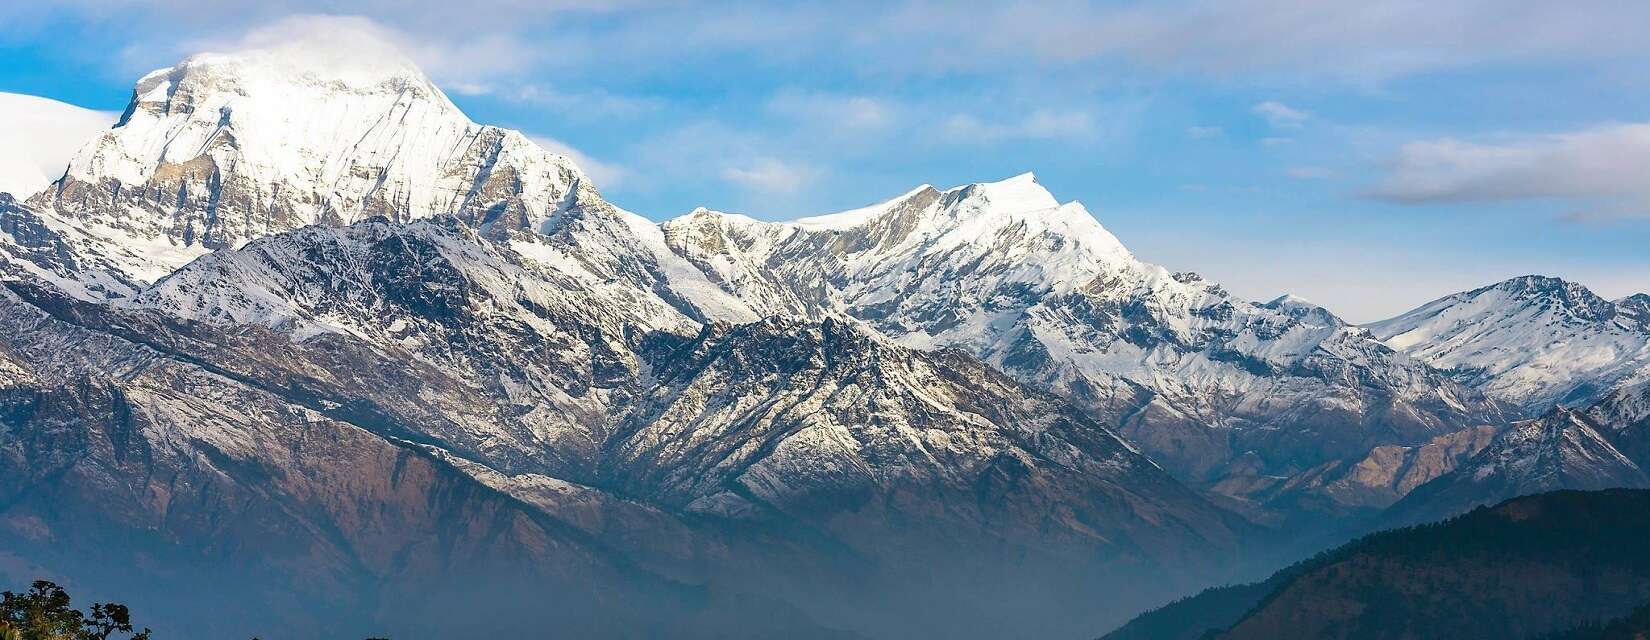 Annapurna Trek 5 days